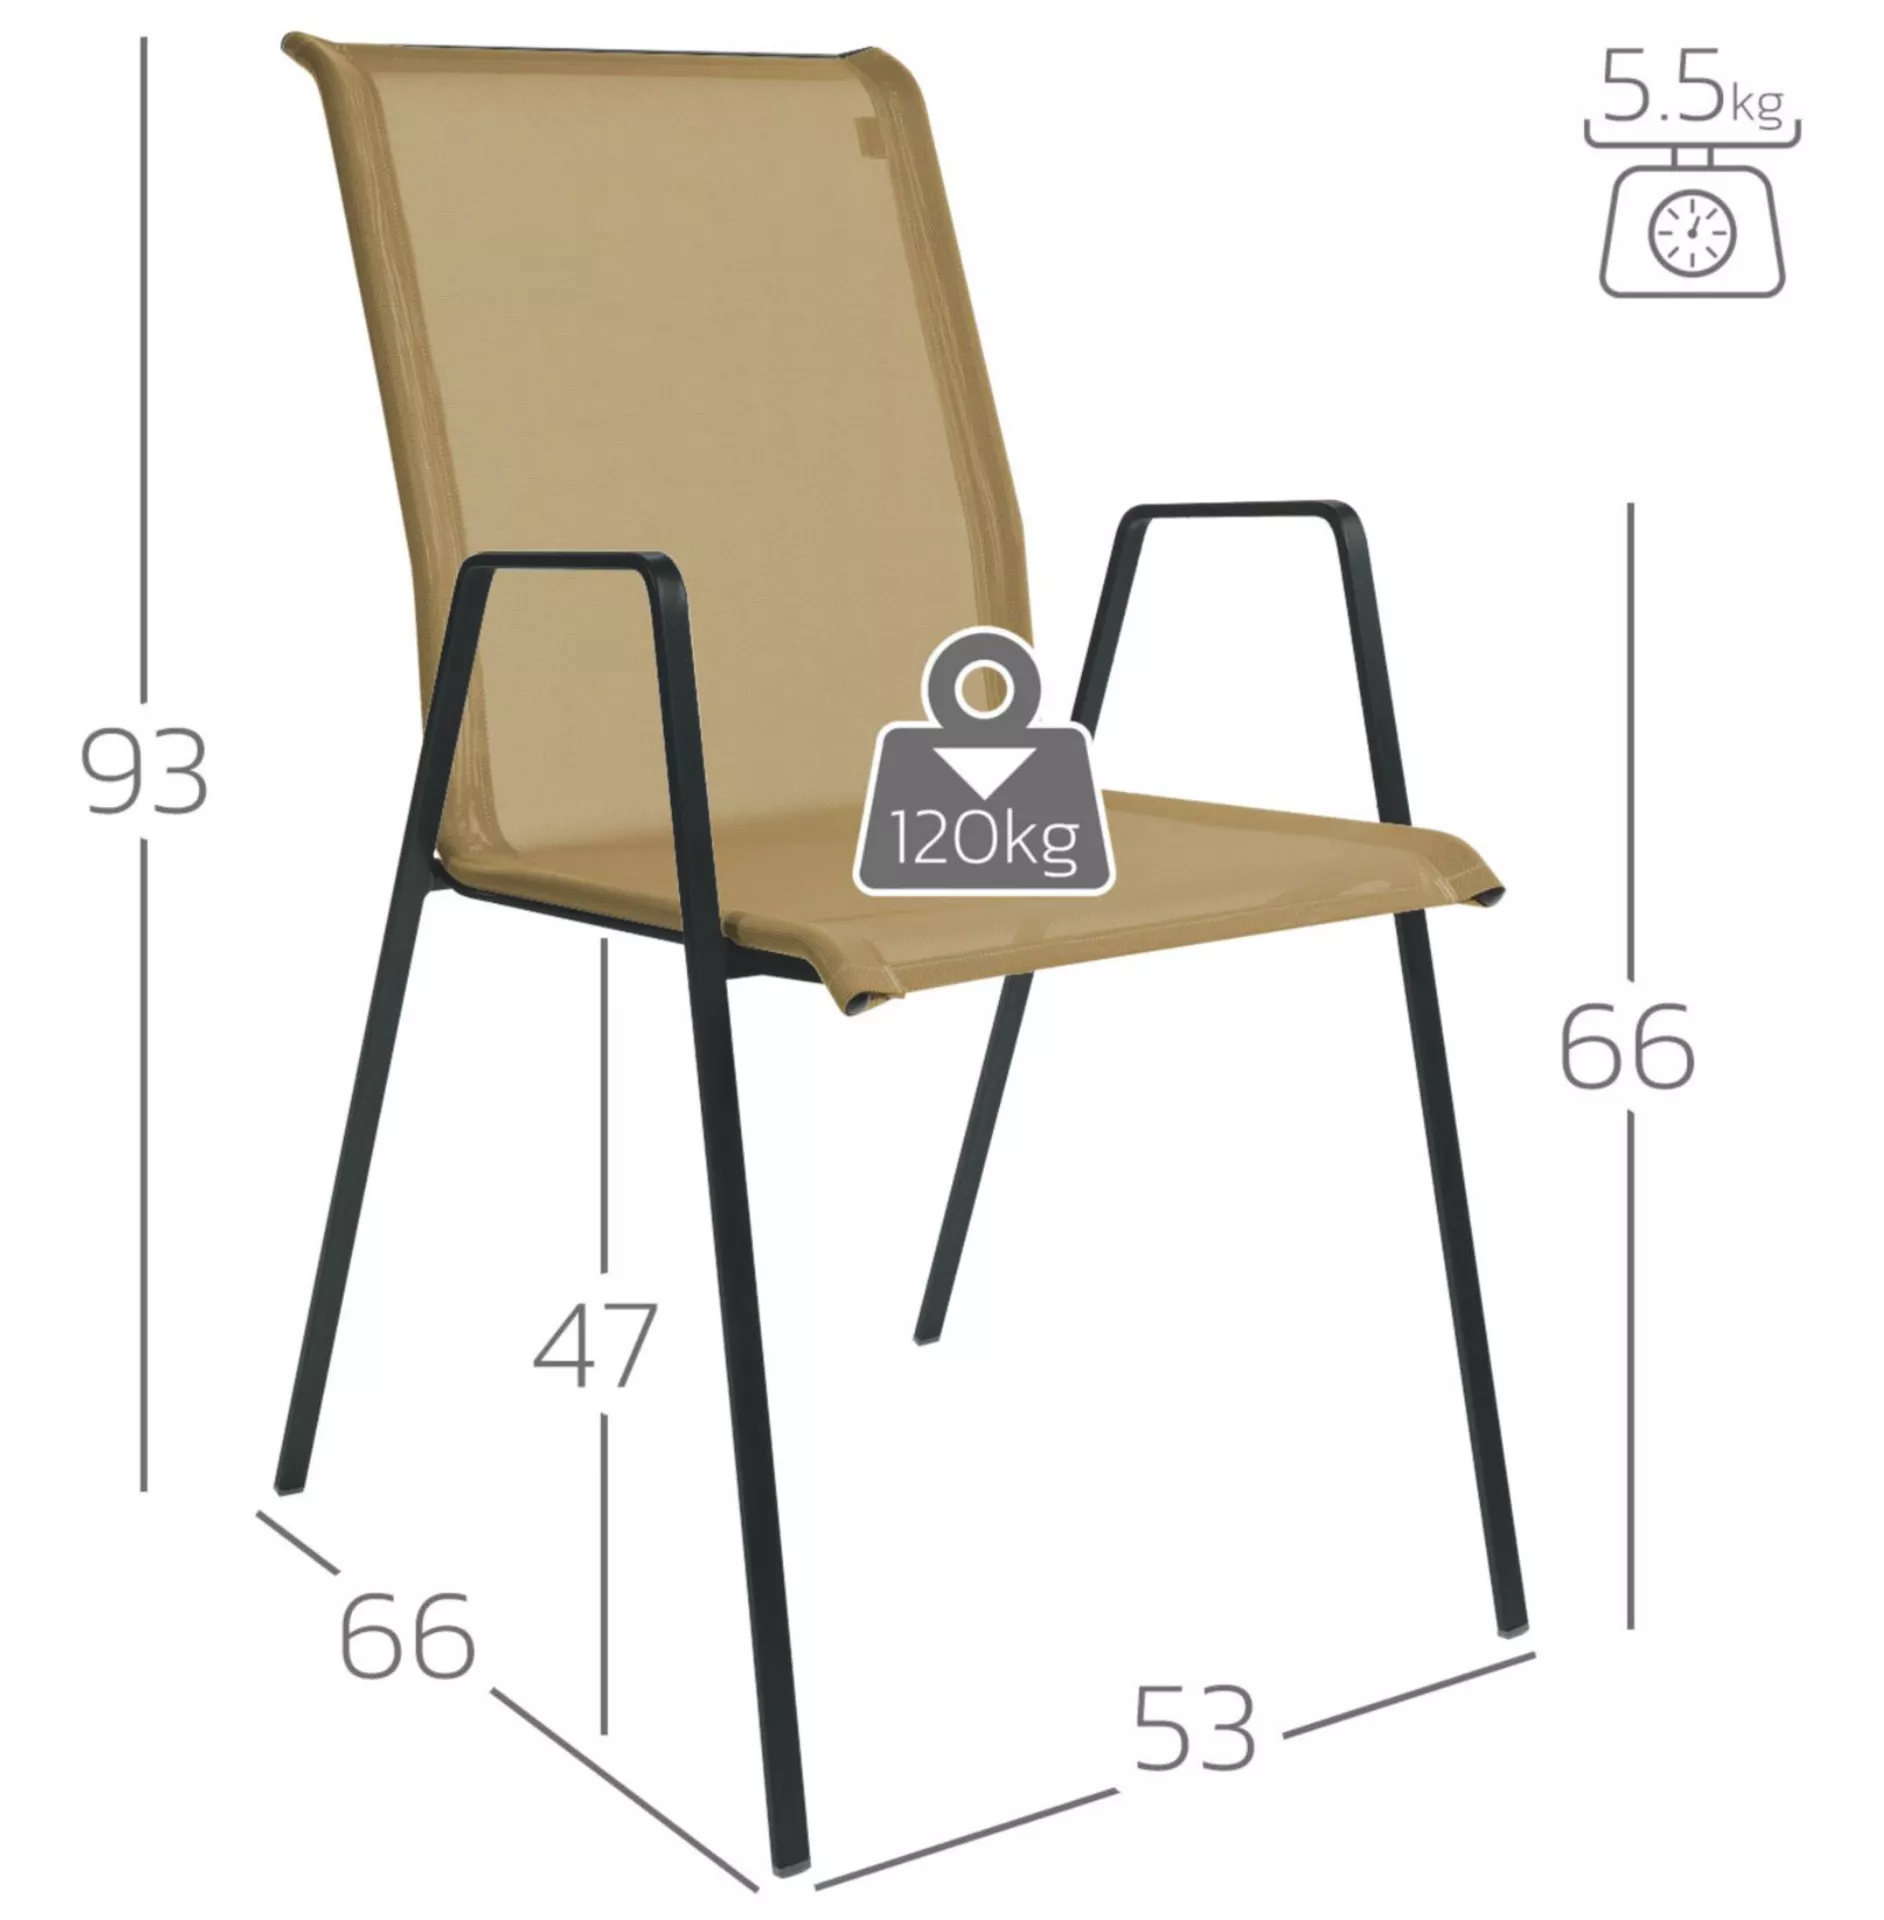 Matten-Sessel Luzern Schaffner / Farbe: Weiss